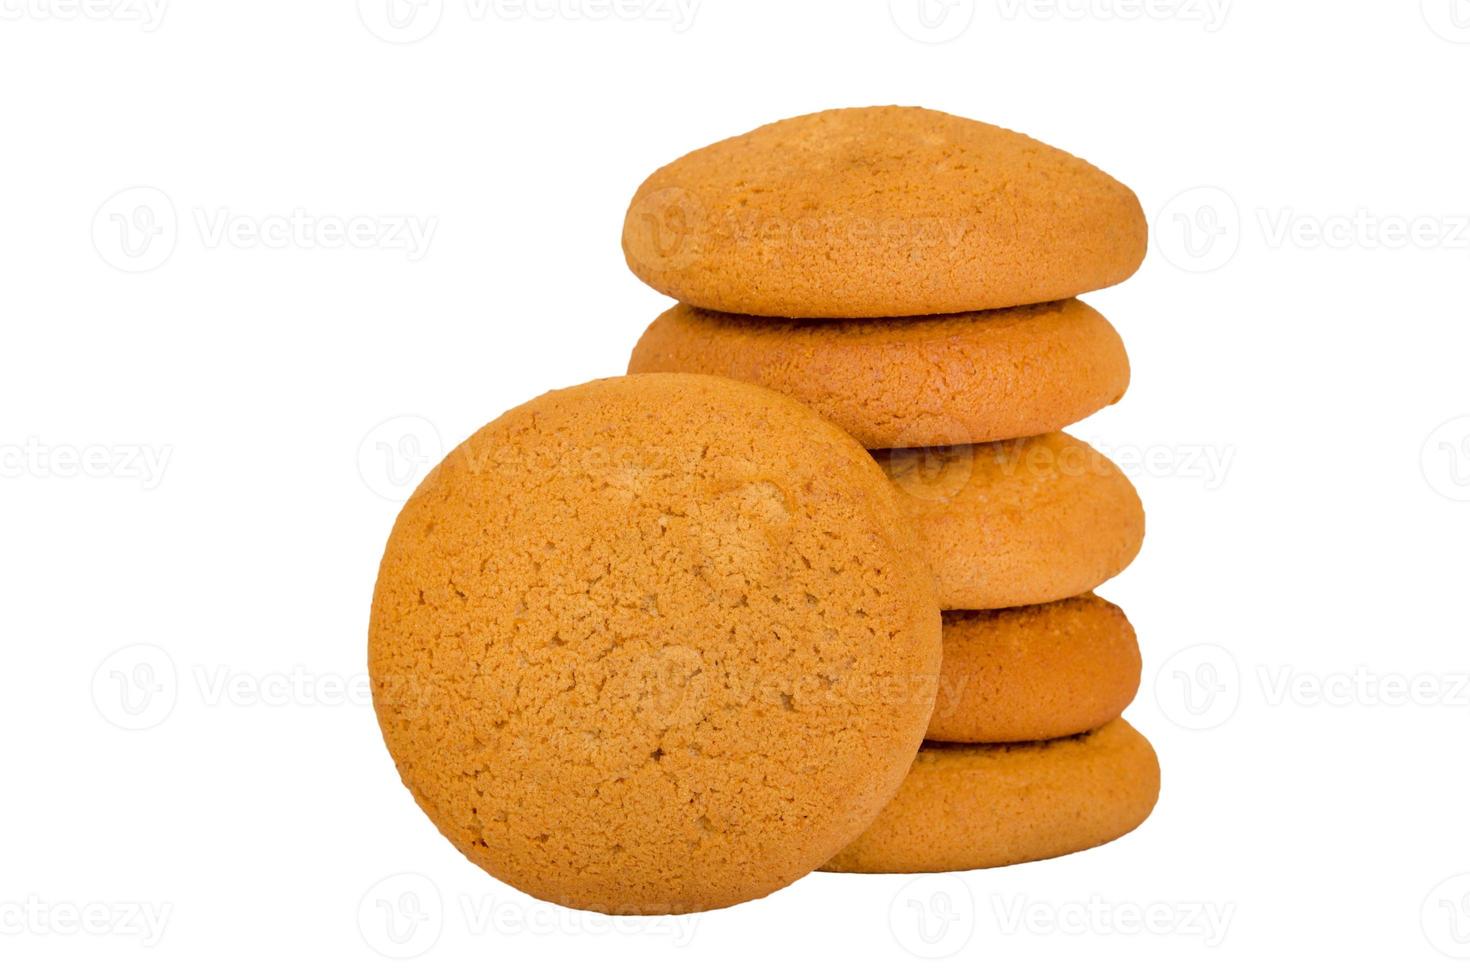 biscoitos de aveia isolados foto